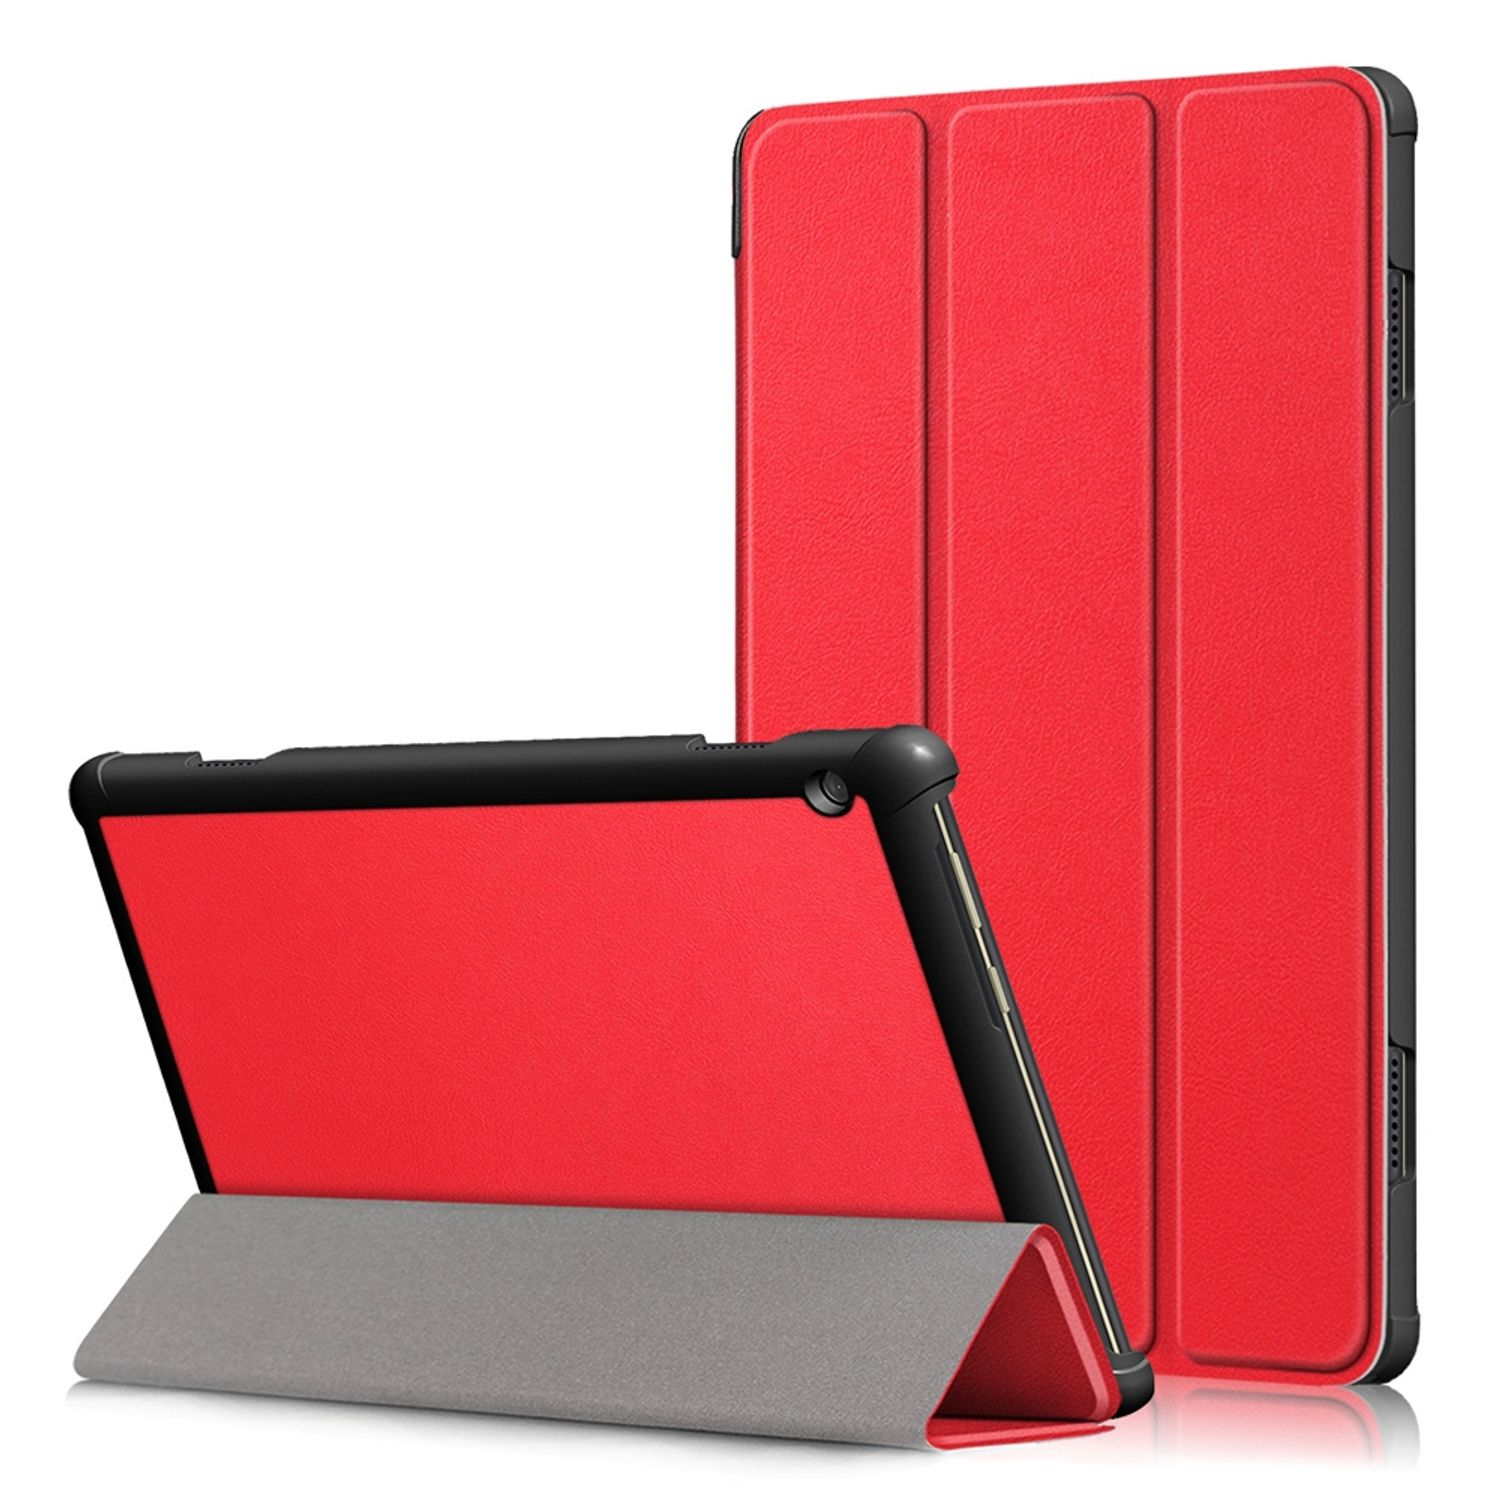 Tablet-Hülle Tablet-Hülle Kunstleder, DESIGN Rot Bookcover KÖNIG für Lenovo